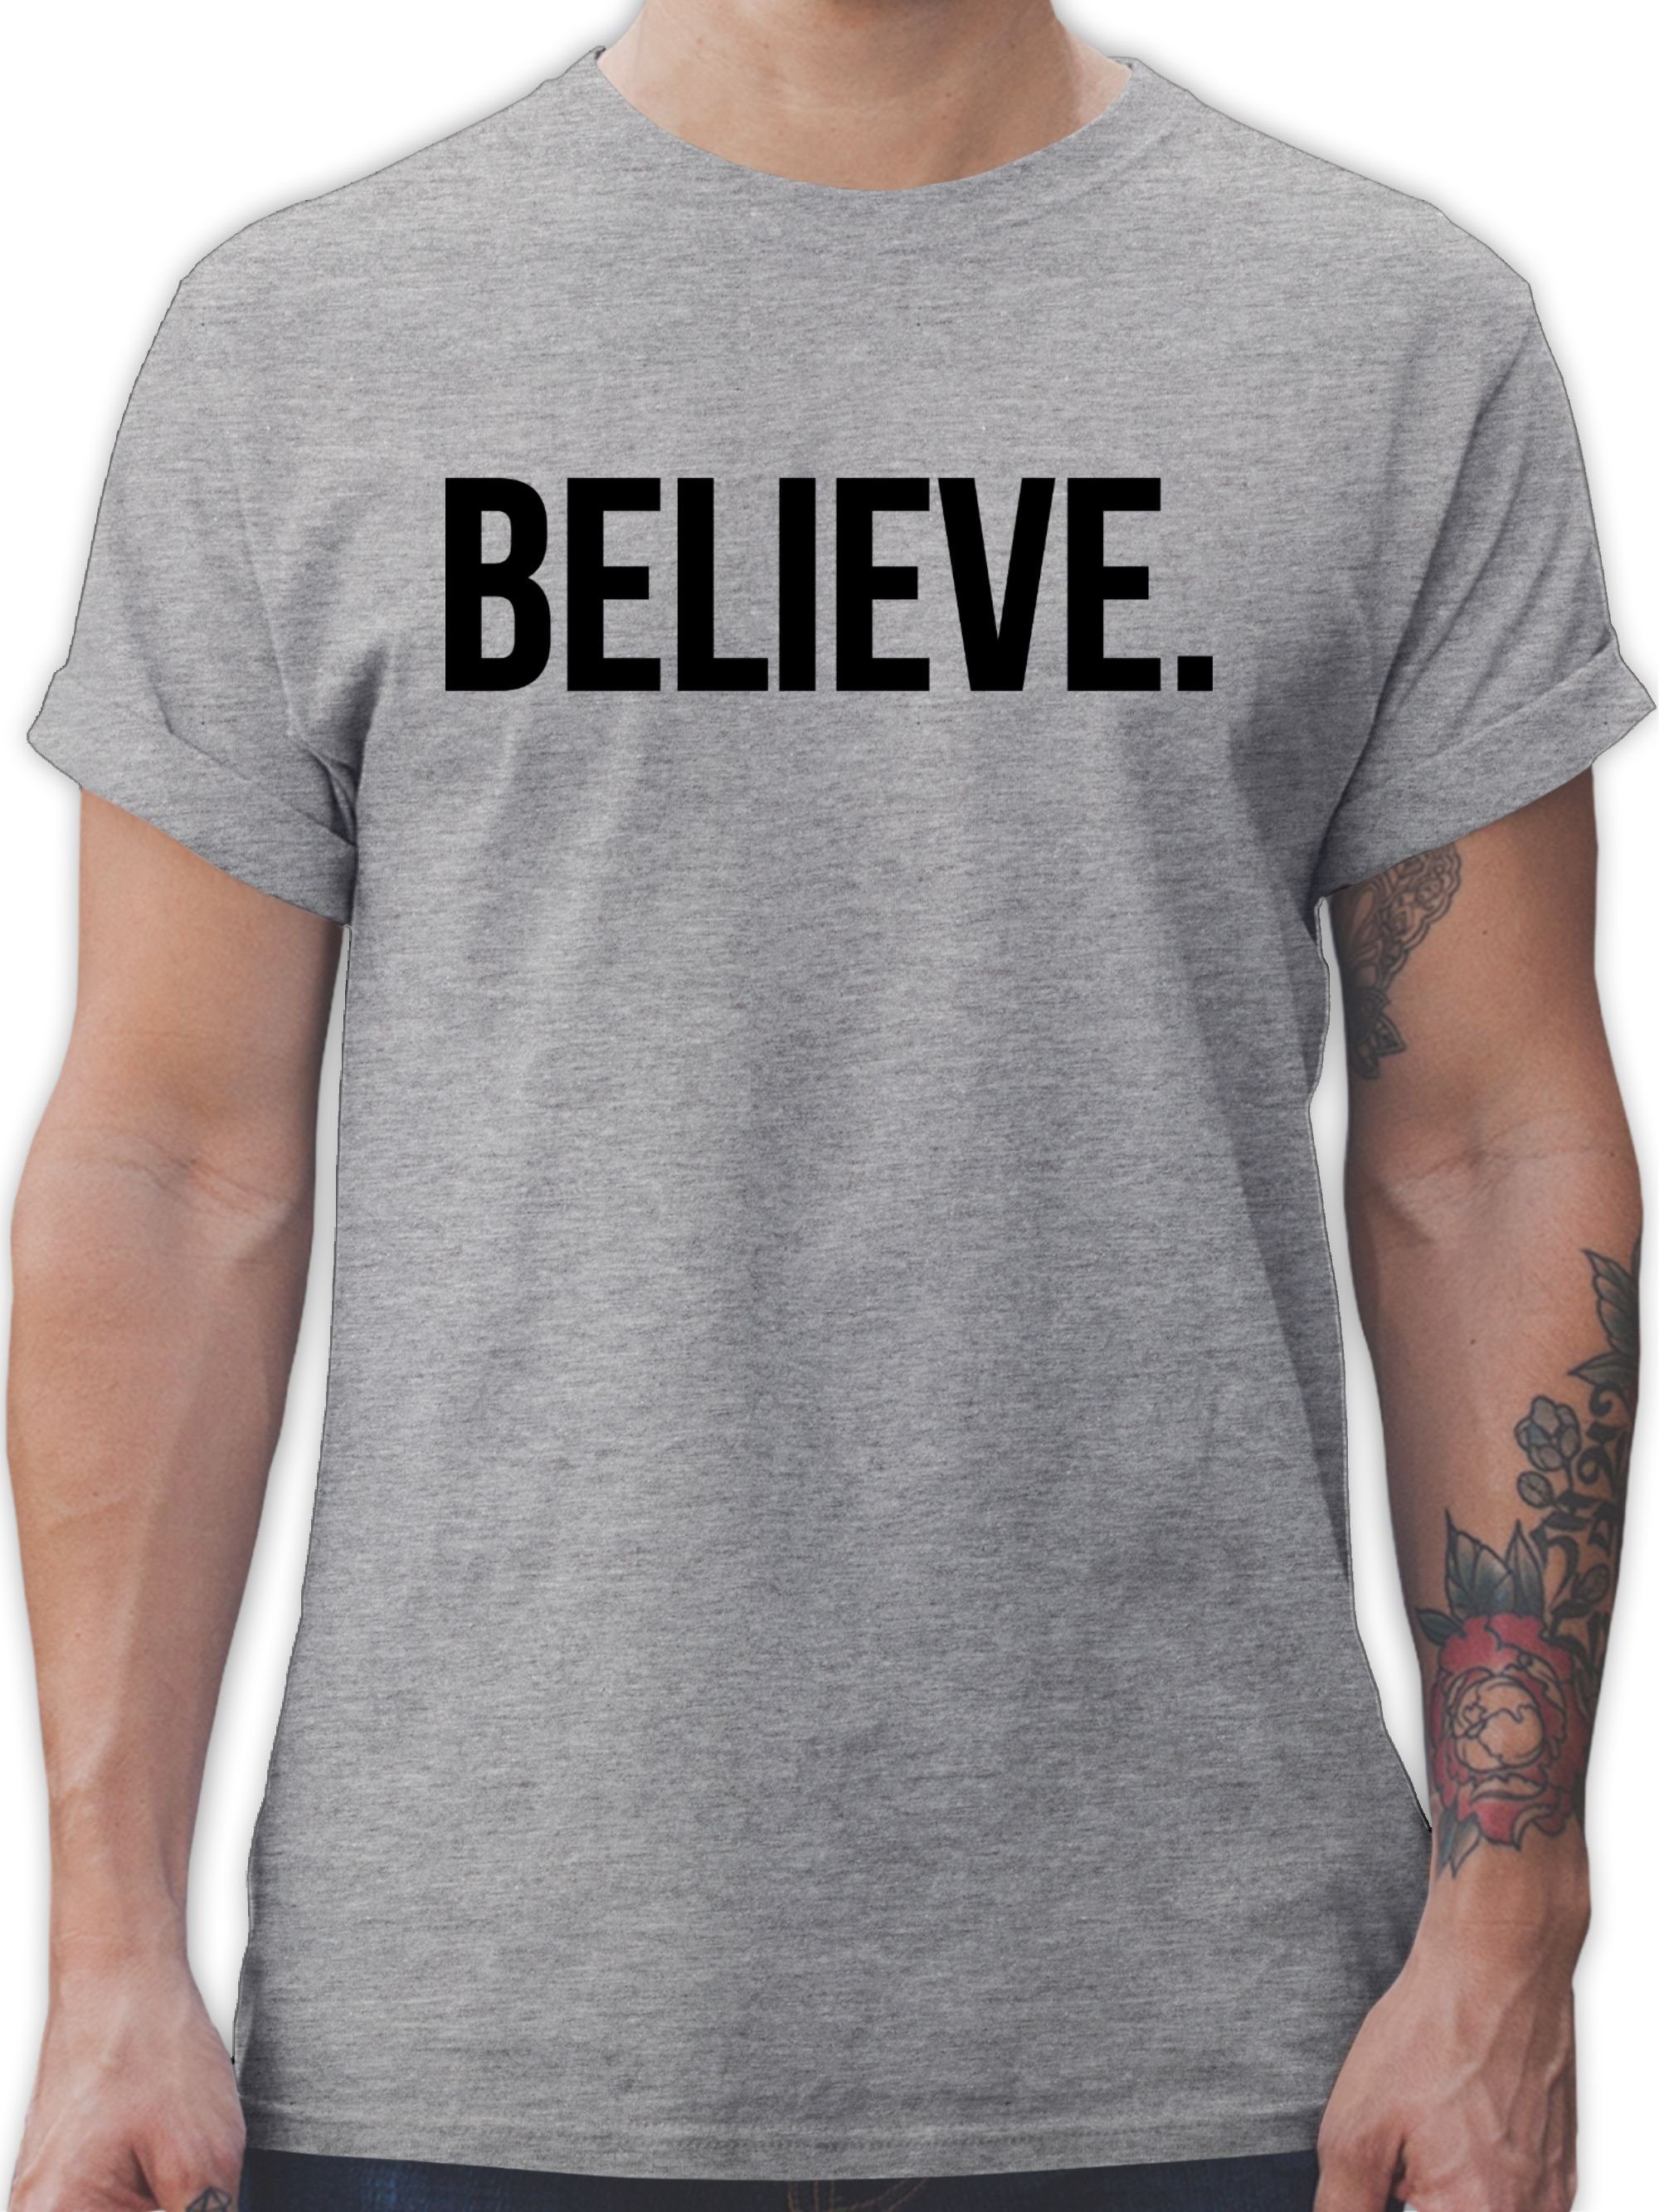 2 Shirtracer meliert Glaube Grau Believe Statement T-Shirt Glauben Religion